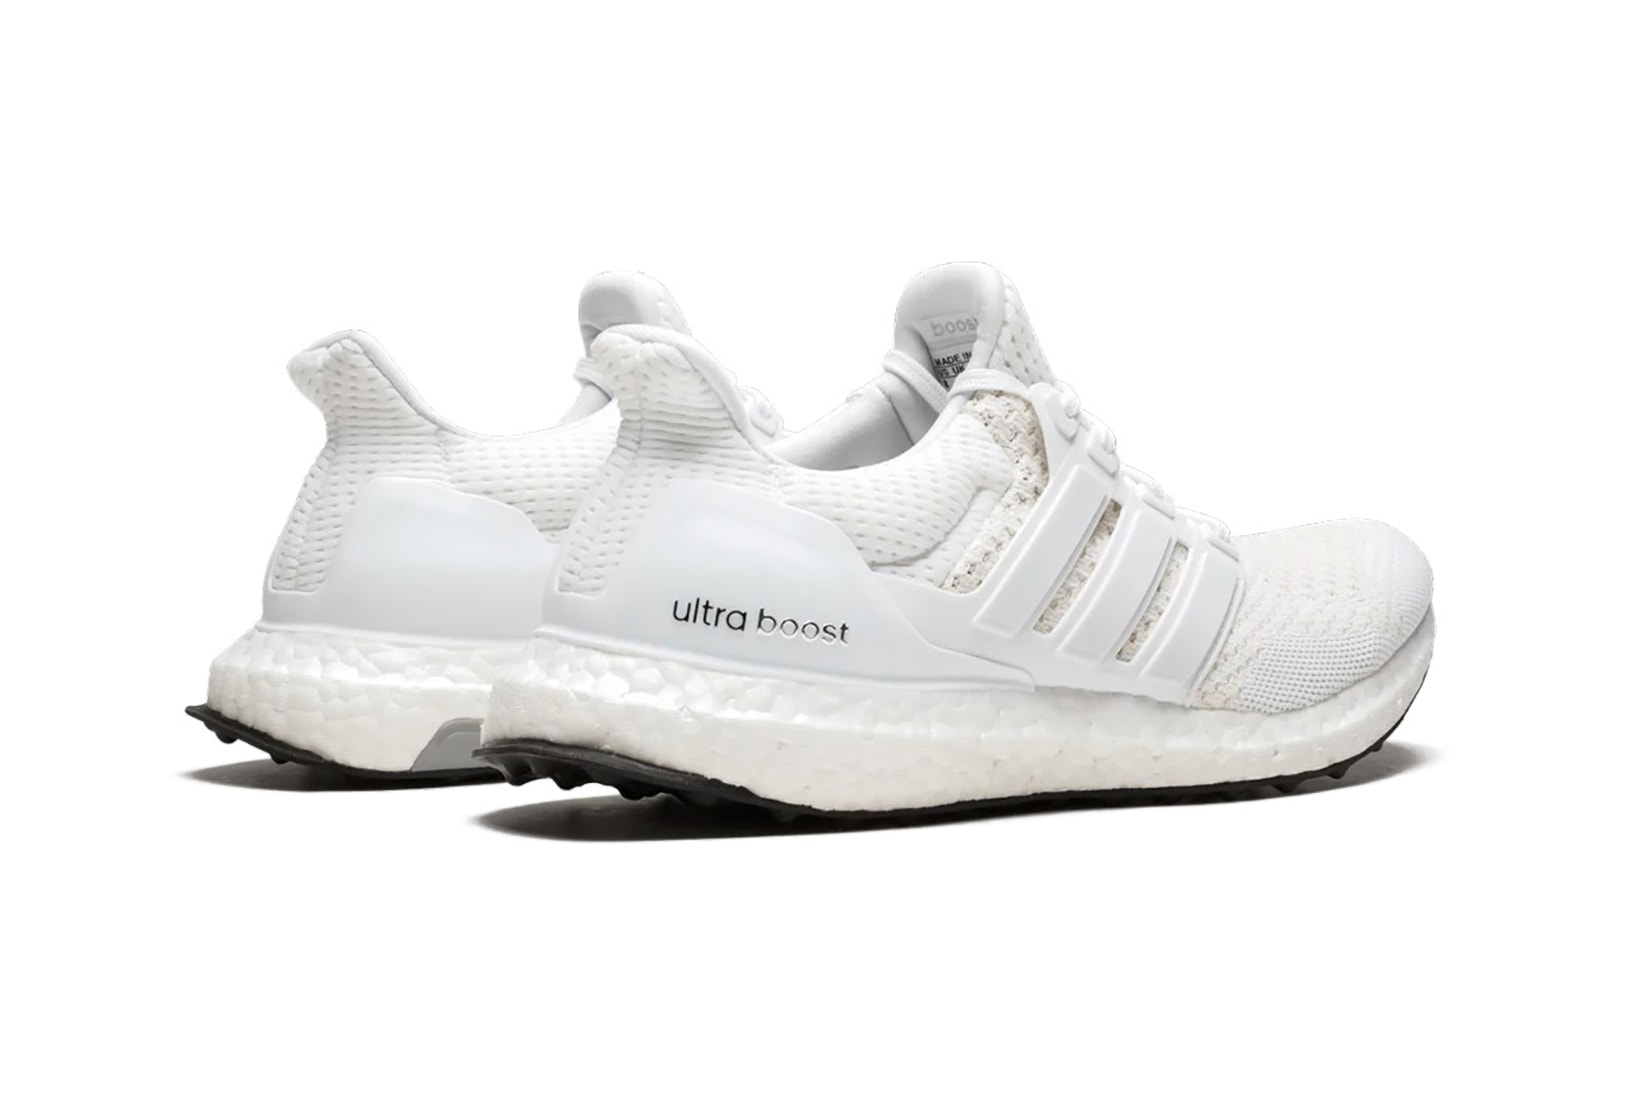 adidas ultraboost 1 0 sneakers triple white colorway shoes footwear sneakerhead